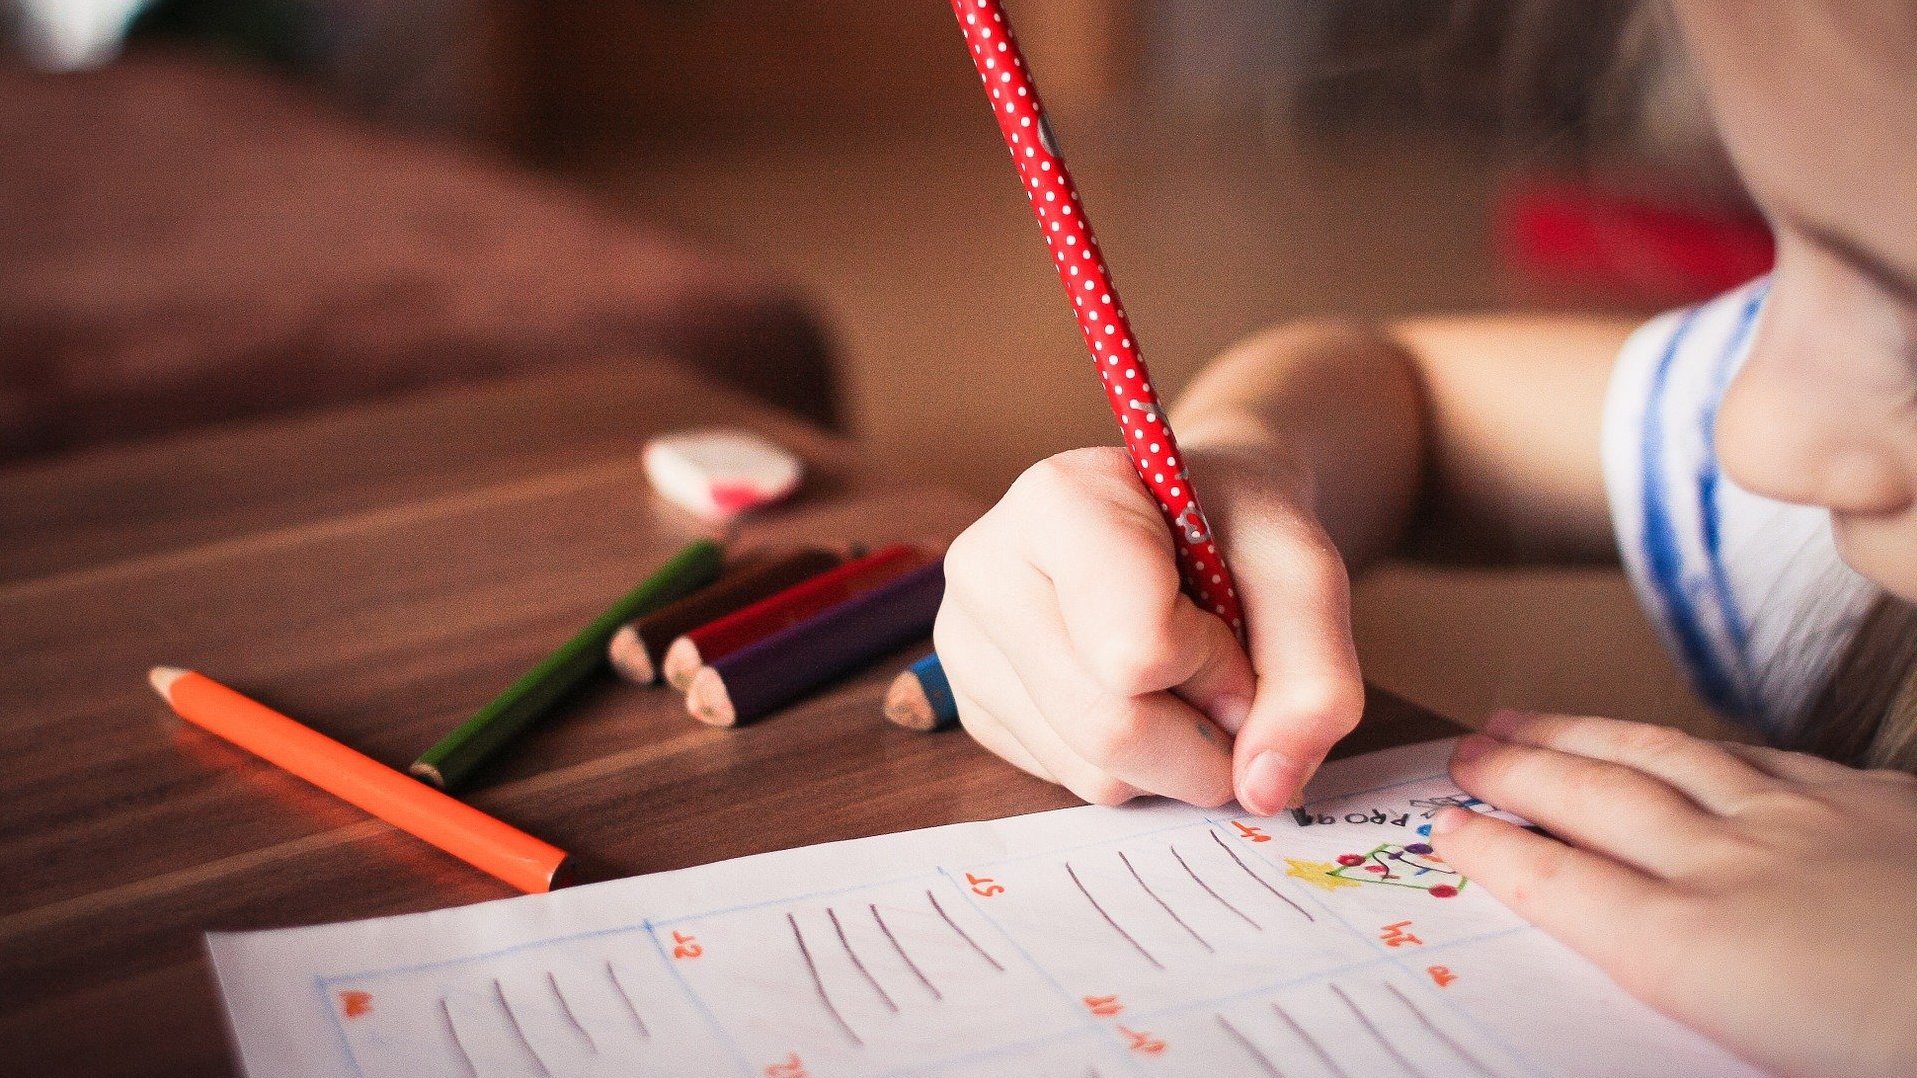 Auf diesem Bild ist ein Kind zu sehen, welches auf einem weißen Papier schreibt und malt.